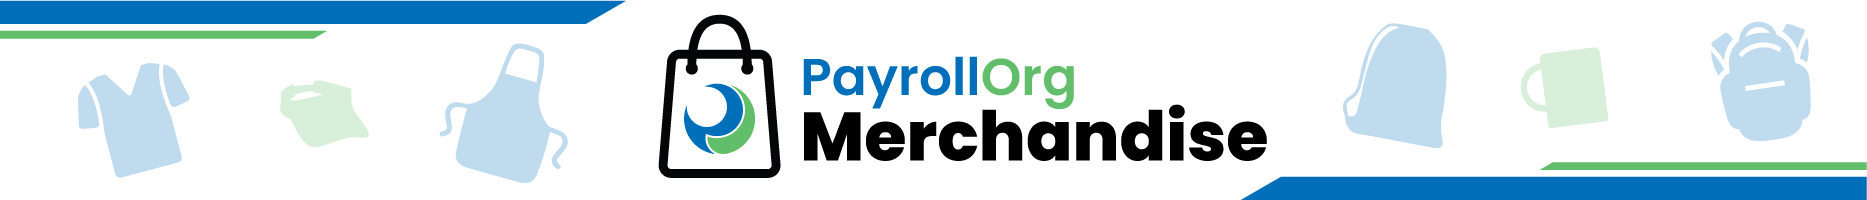 23-PayrollOrg-Merch